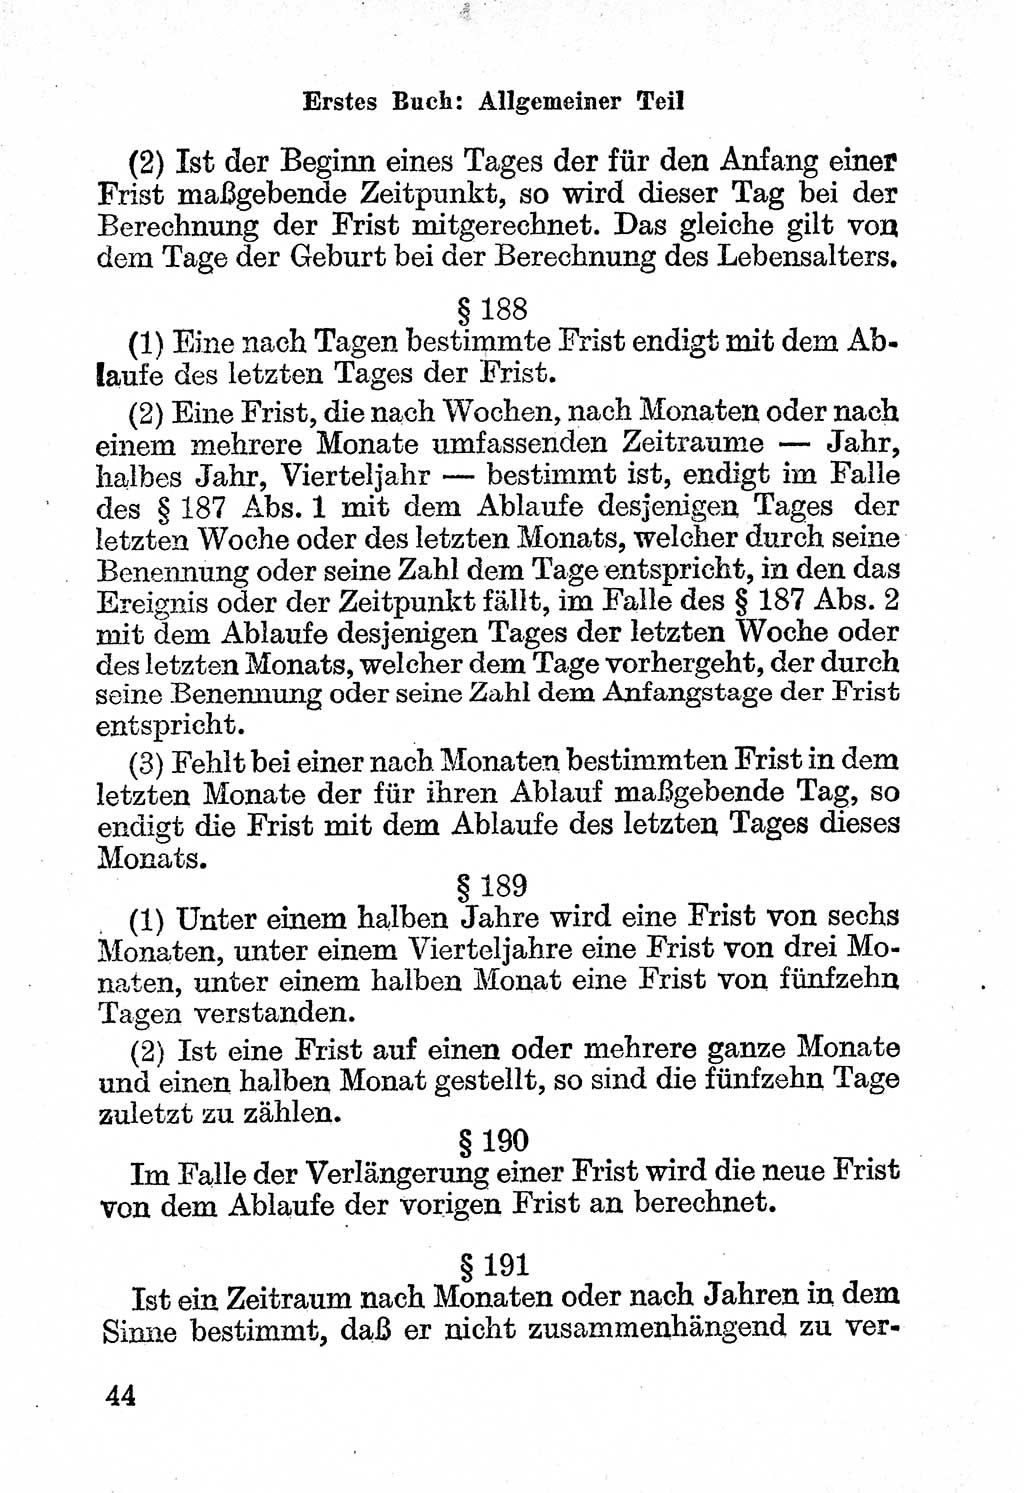 Bürgerliches Gesetzbuch (BGB) nebst wichtigen Nebengesetzen [Deutsche Demokratische Republik (DDR)] 1956, Seite 44 (BGB Nebenges. DDR 1956, S. 44)